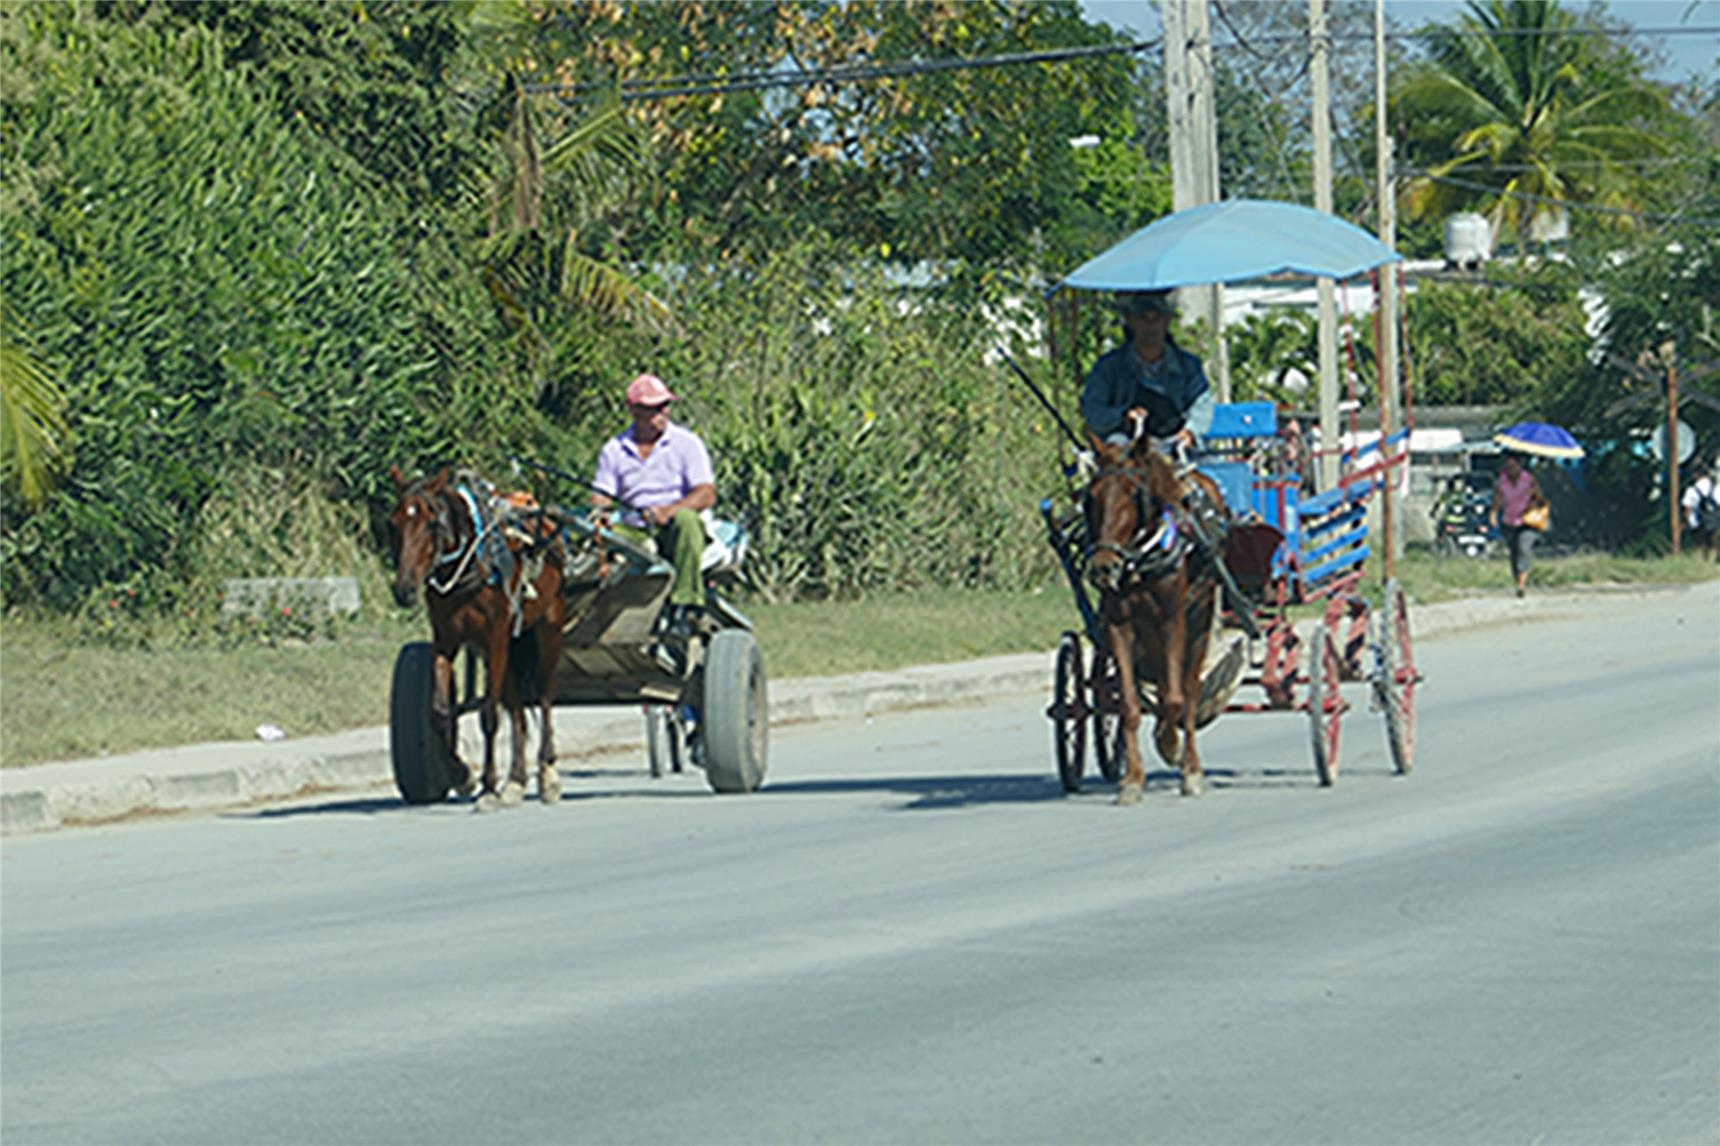 Pferdekarren sind oft das einzig zuverlässige Verkehrsmittel (Benzinmangel) 